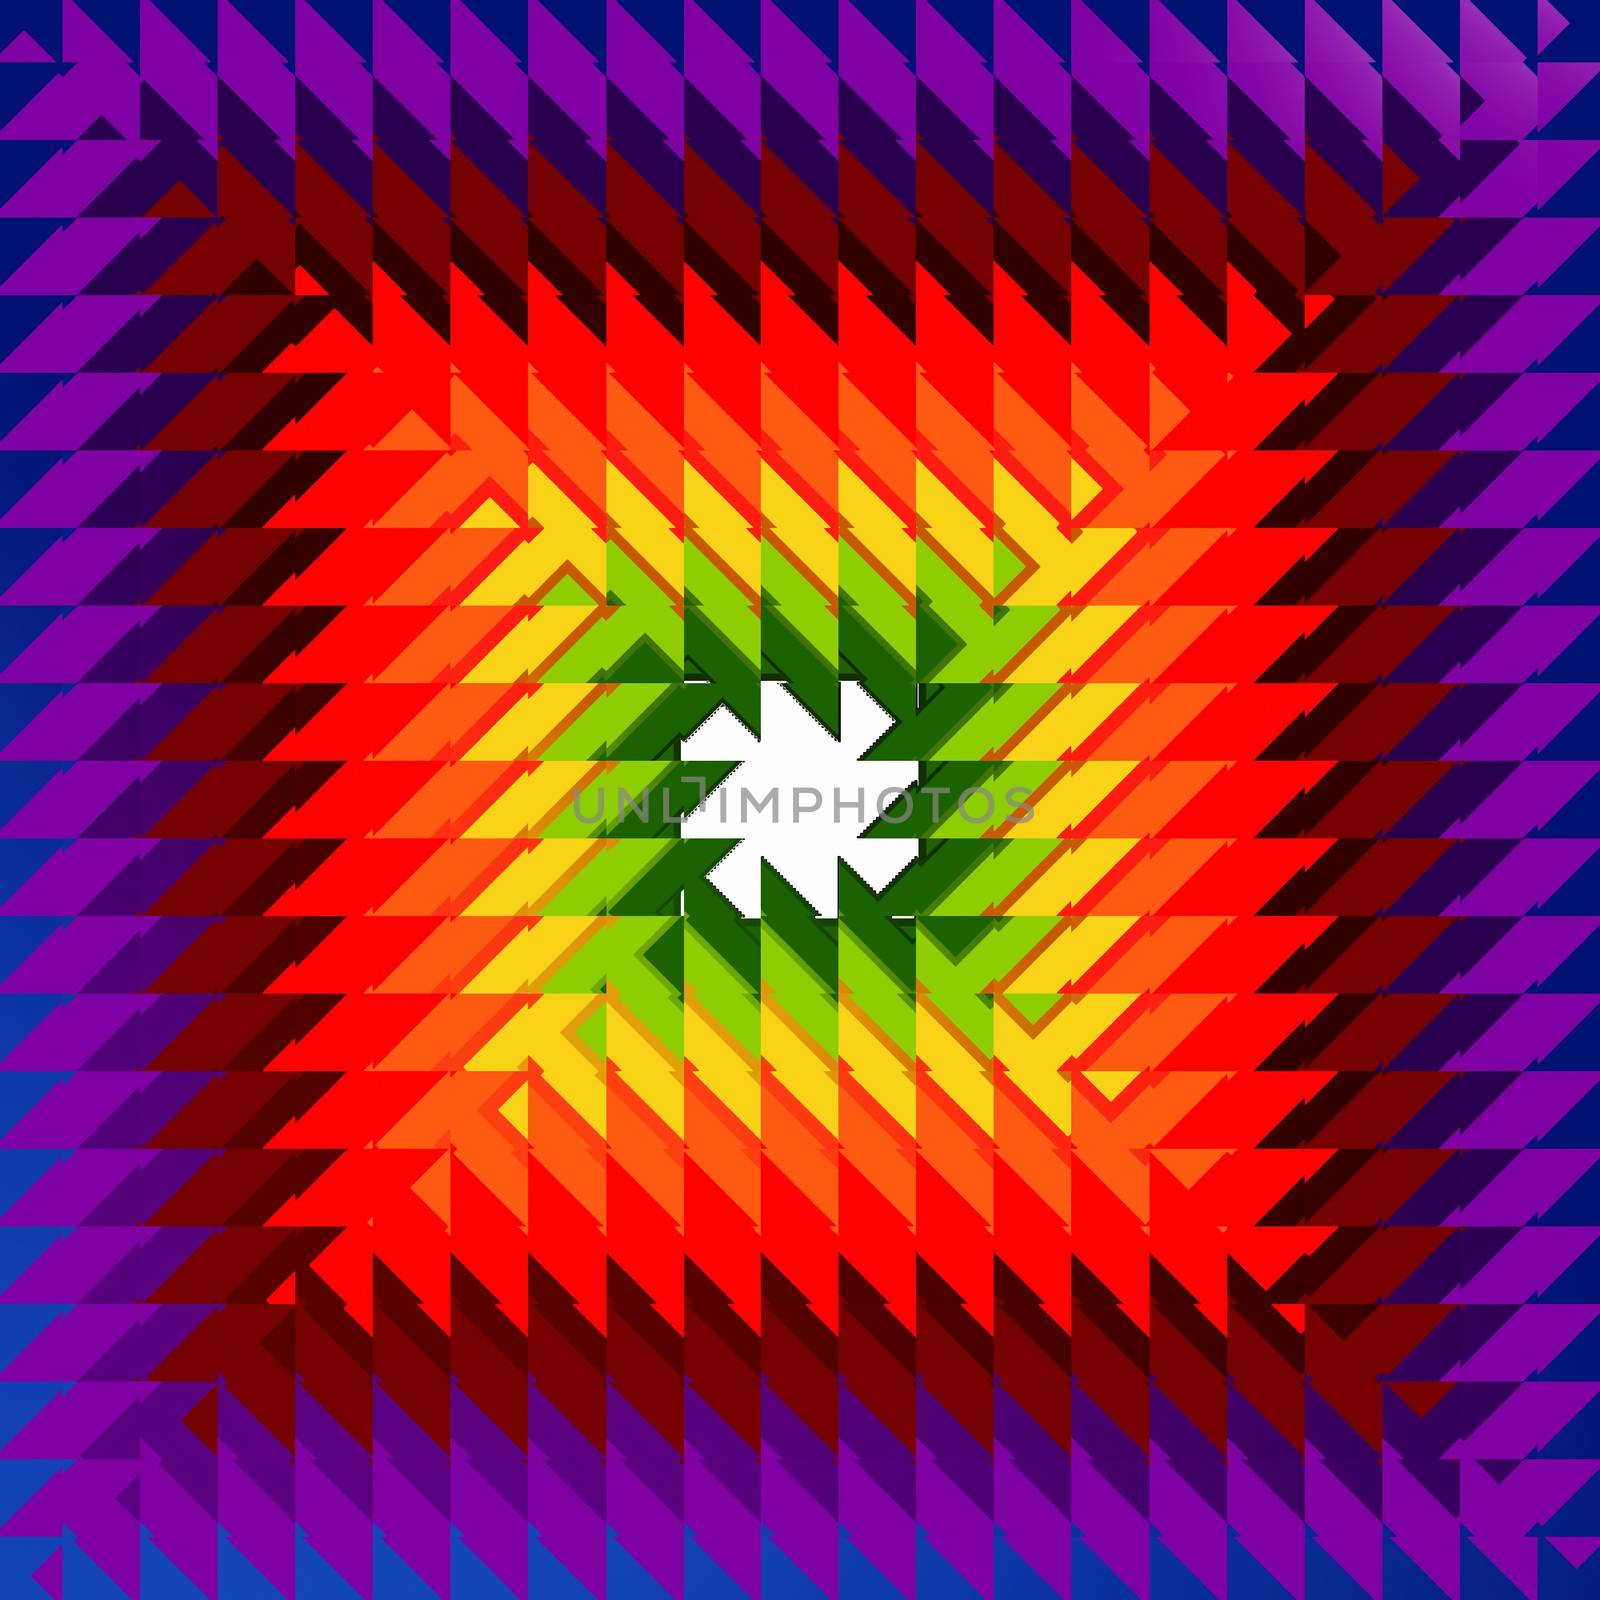 concentric rainbow rhombs by marinini